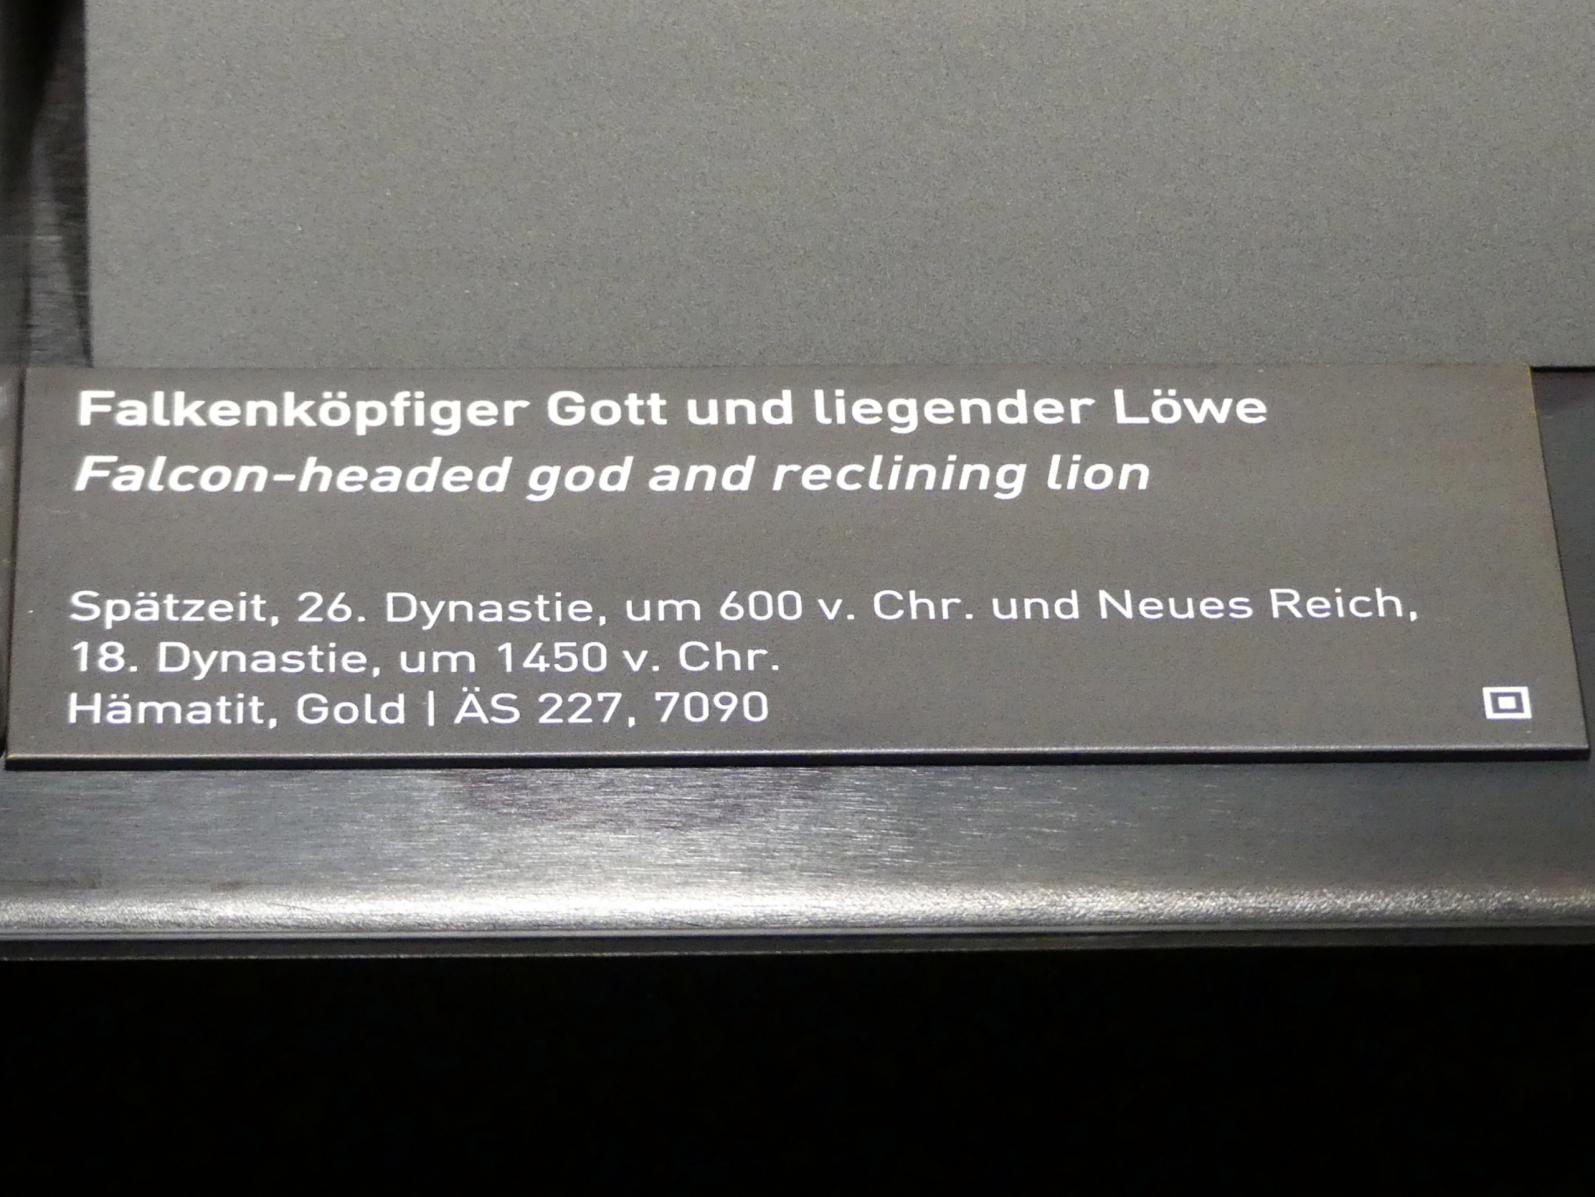 Liegender Löwe, 18. Dynastie, Undatiert, 1450 v. Chr., Bild 2/2